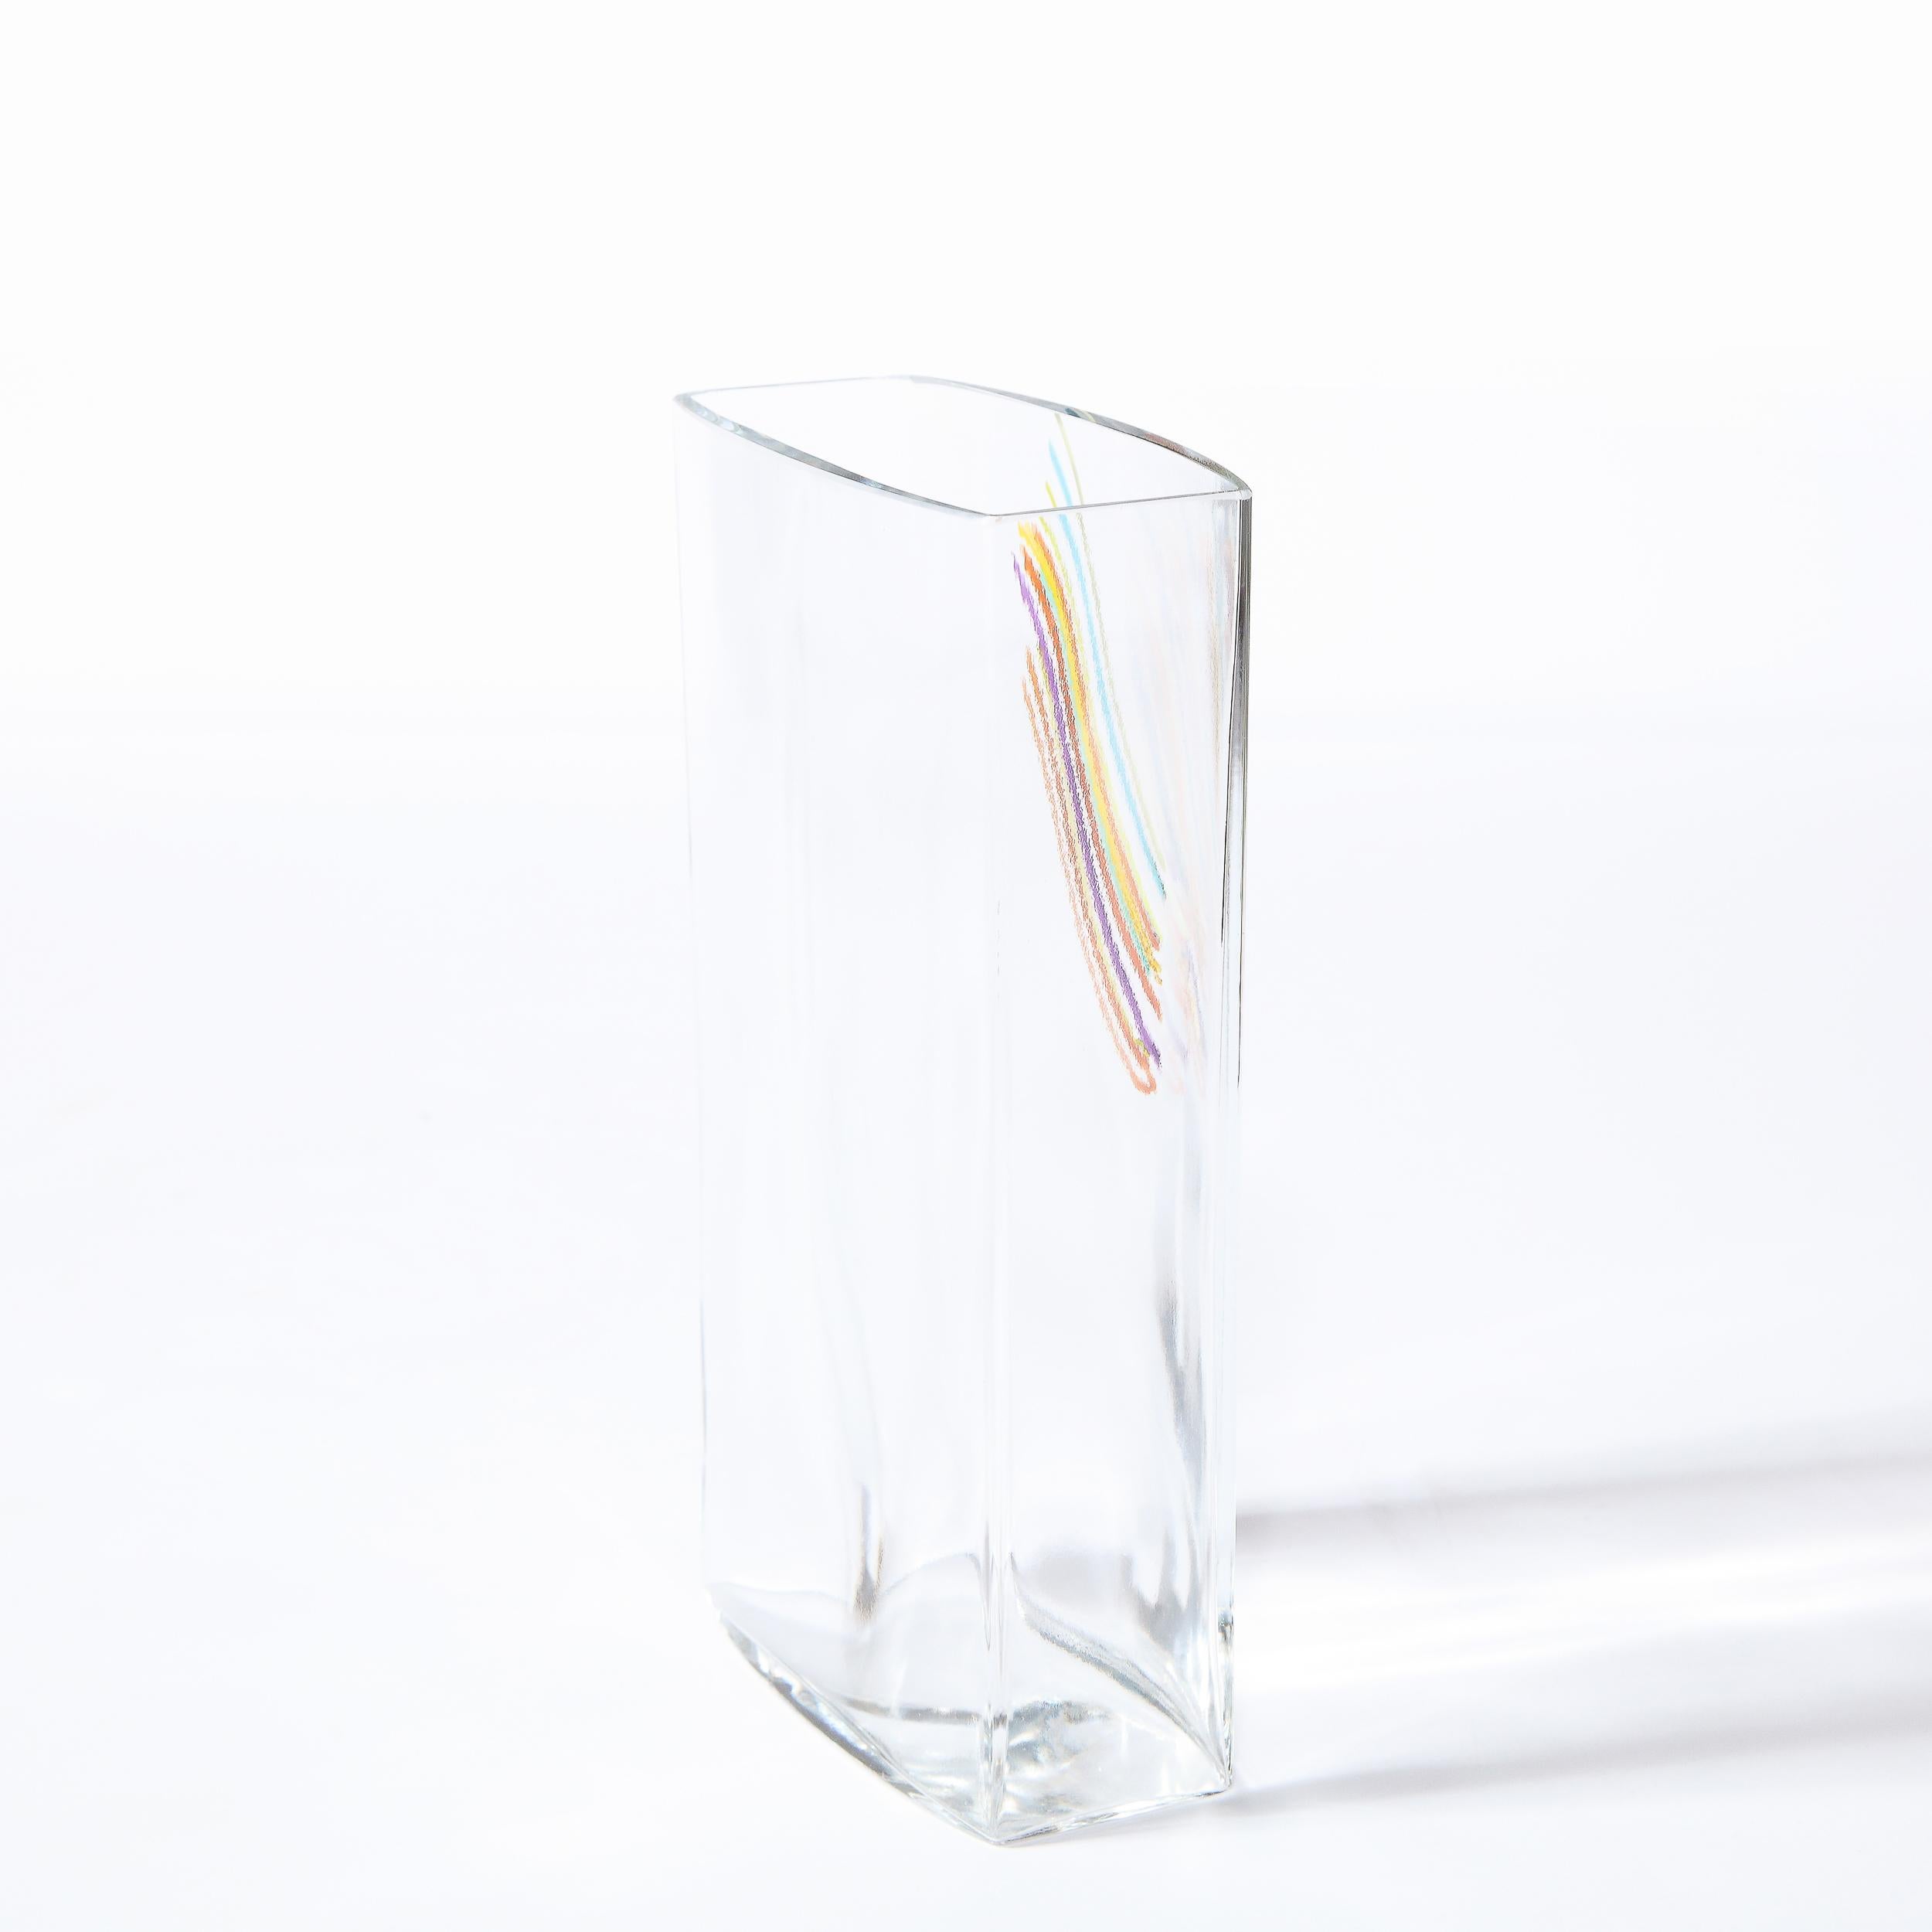 Modernist Rectangular Translucent Glass Vase by Bertil Vallien for Kosta Boda For Sale 2